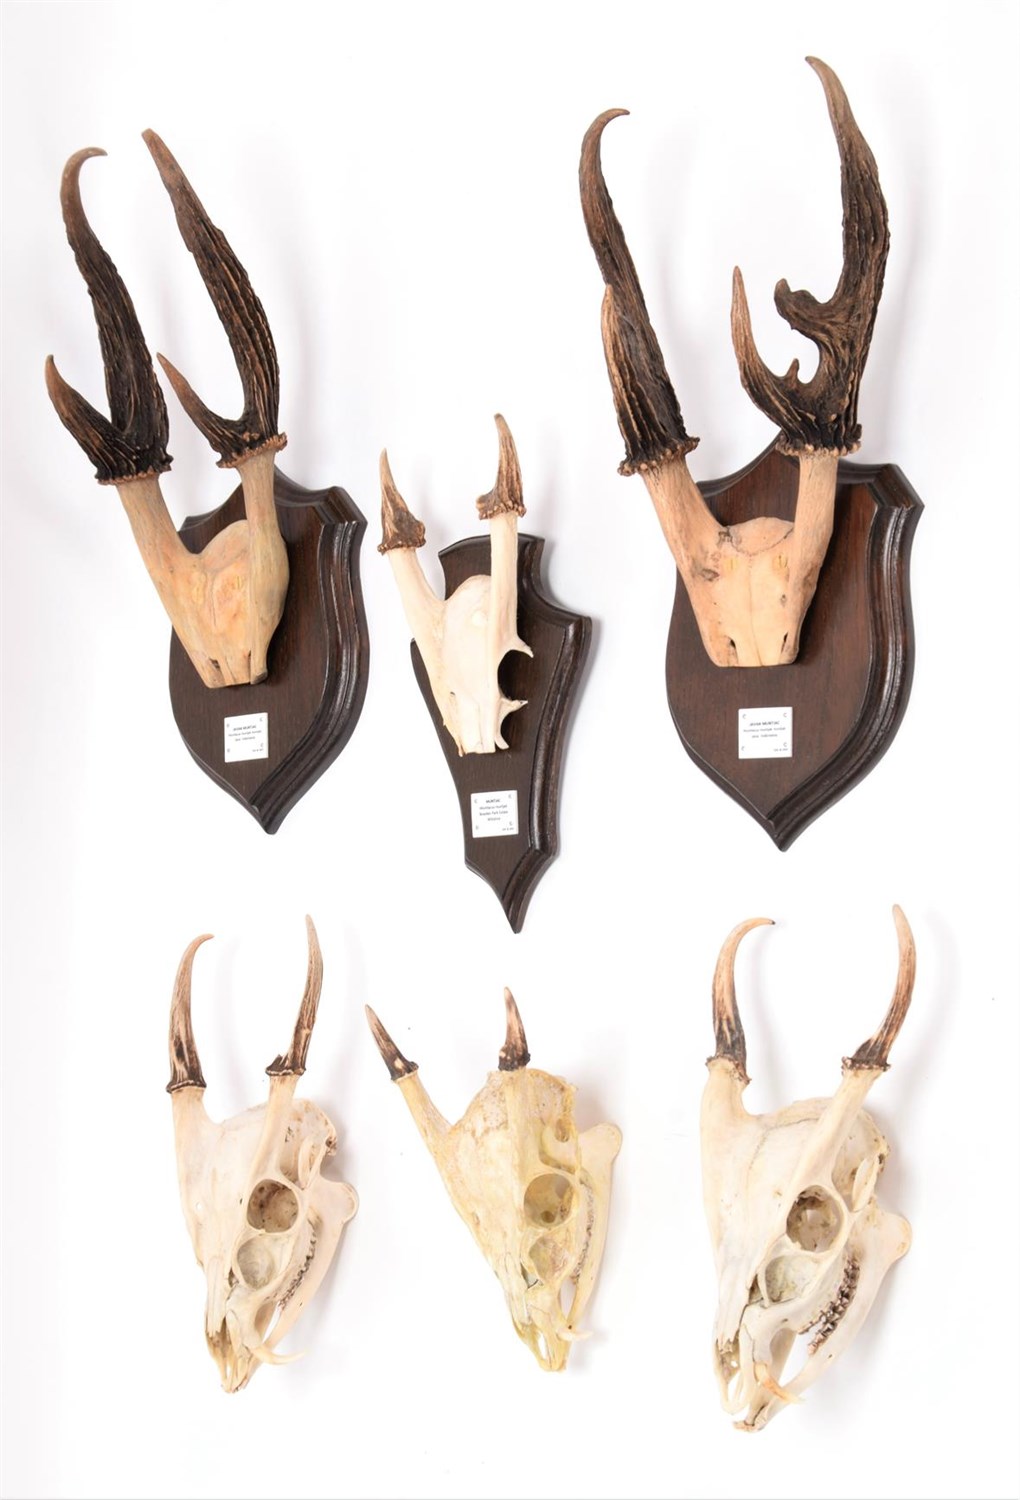 Lot 77 - Antlers/Horns: A Collection of Javan & Common Muntjac Deer, two sets of adult male Javan...